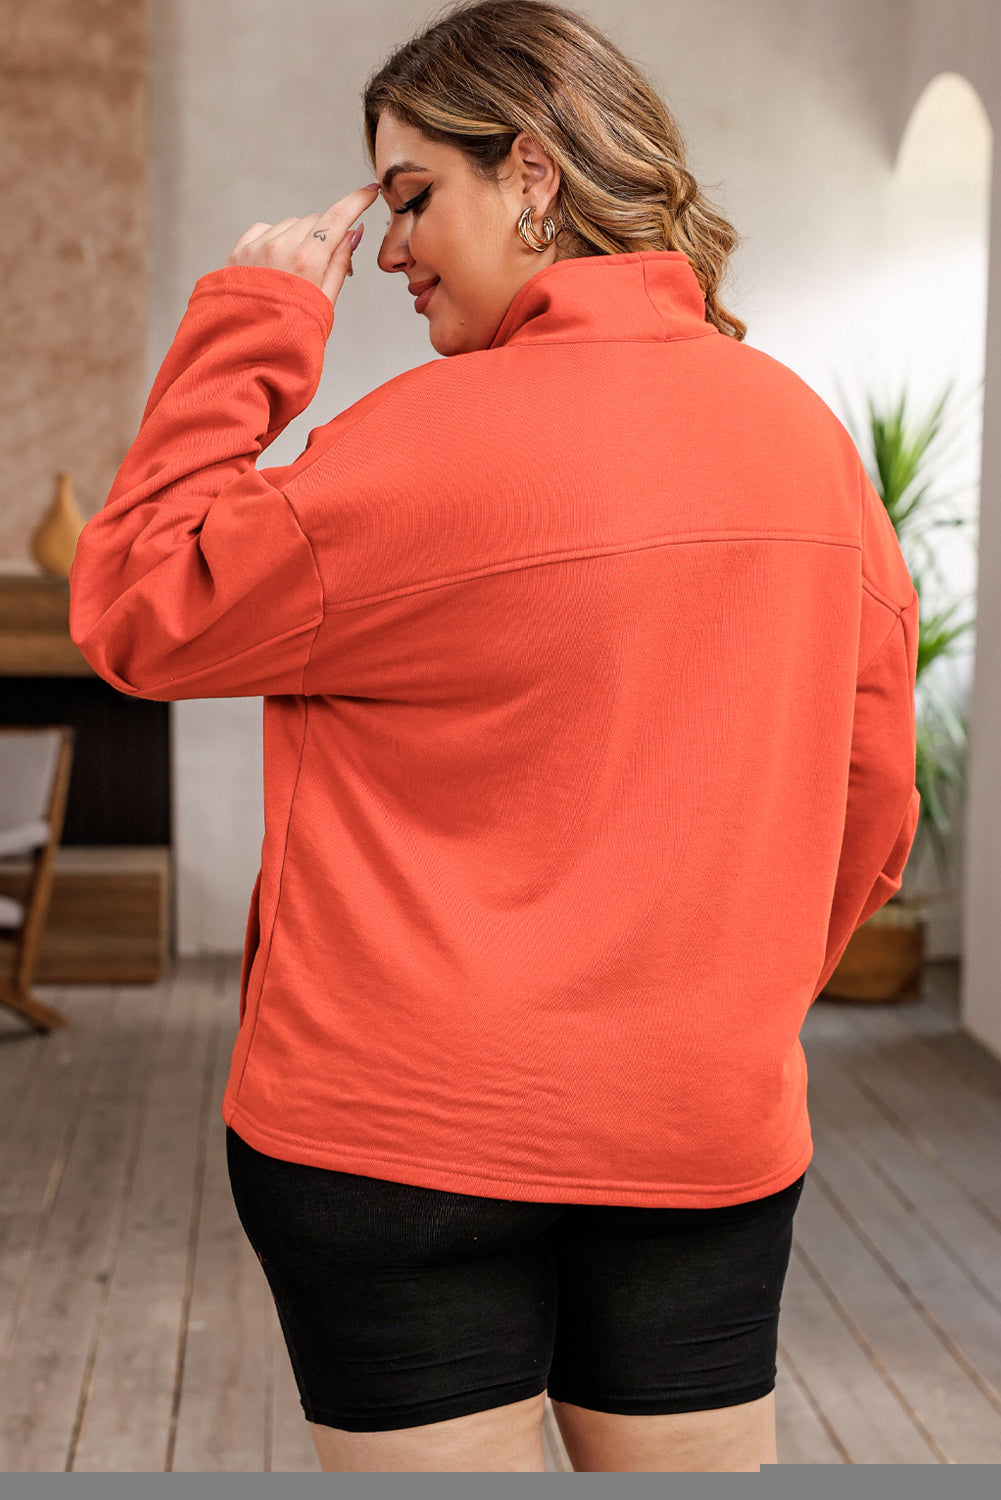 Sweat-shirt orange avec poche et fermeture éclair avec joint torique, grande taille